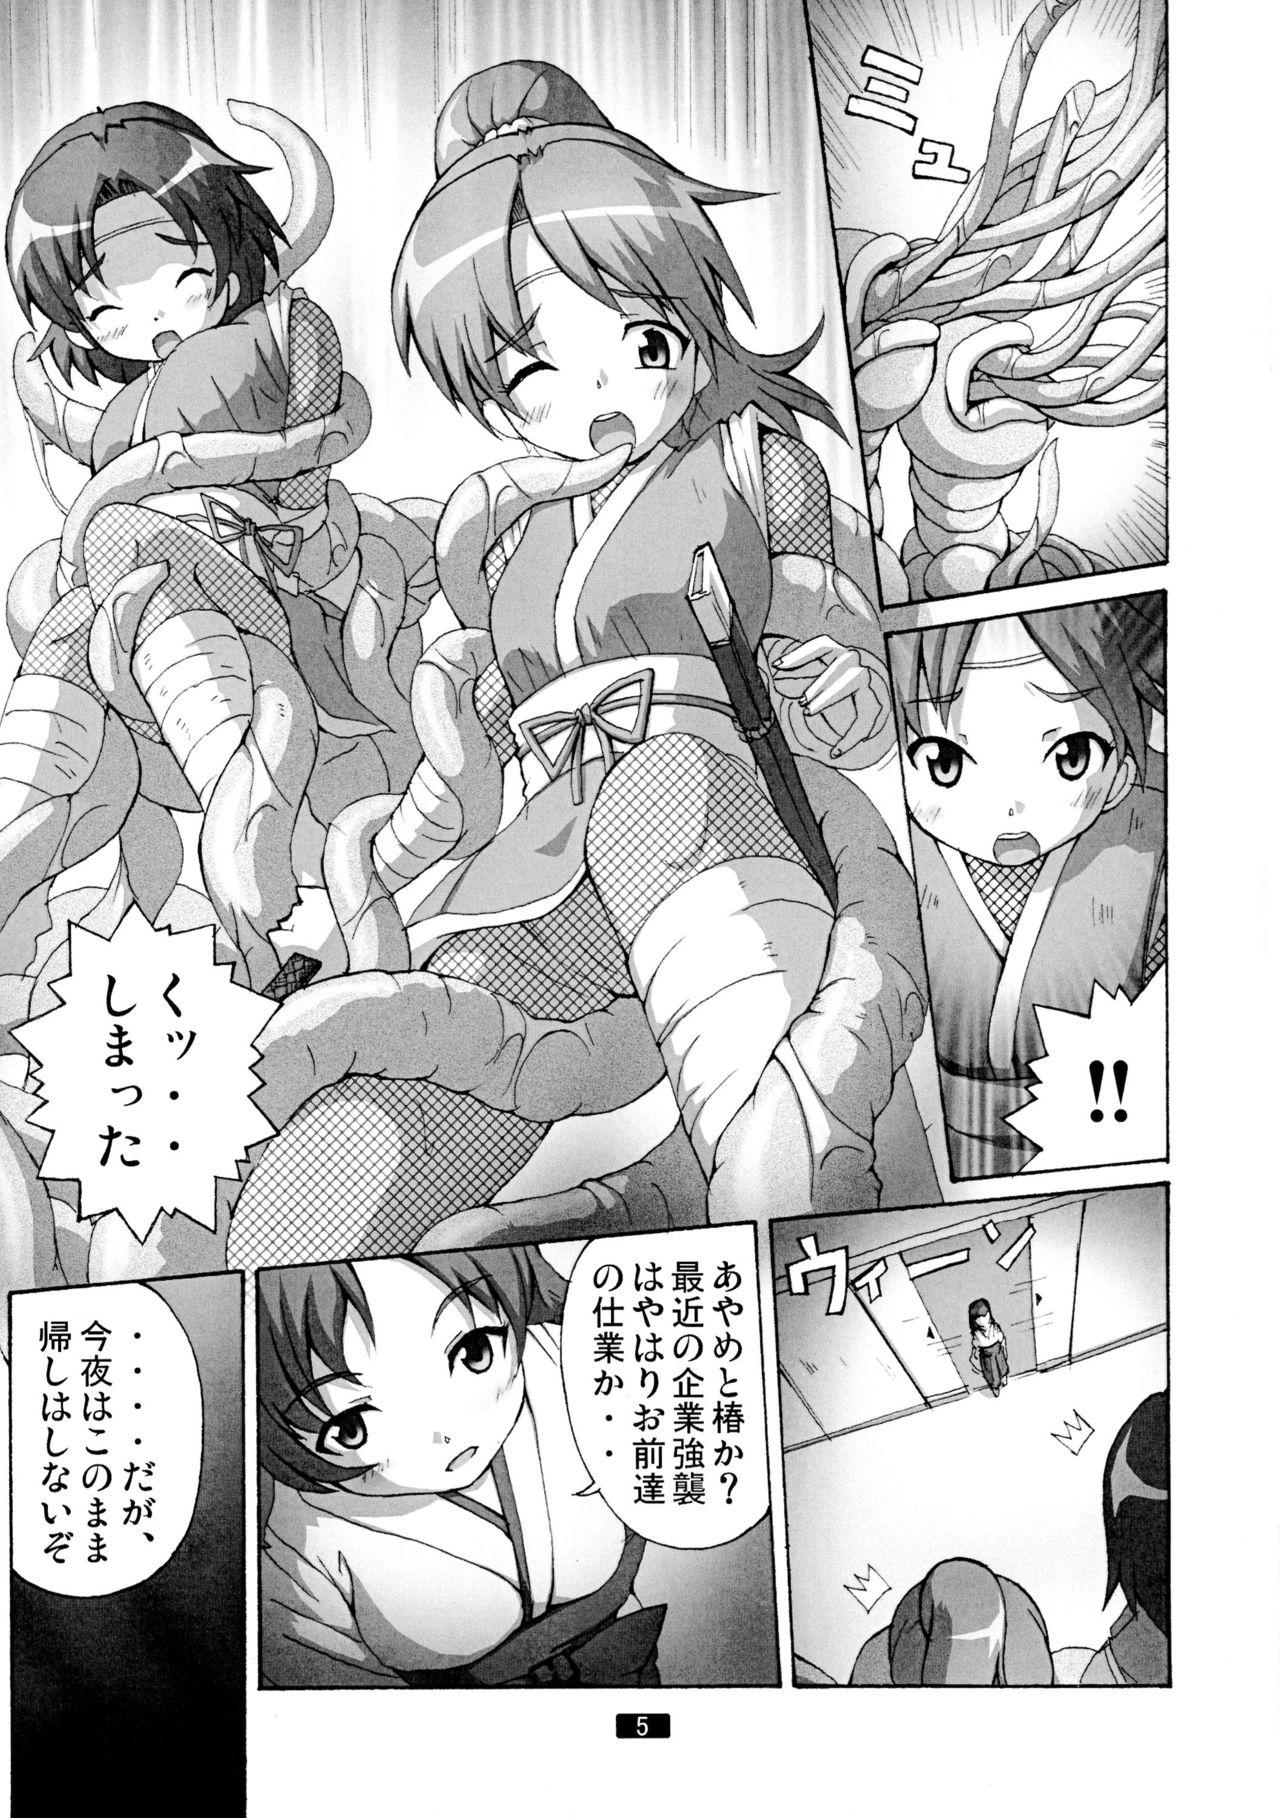 Nasty Kaiun no Taimashi Nozomi 5 1/ 2 Cuckold - Page 5